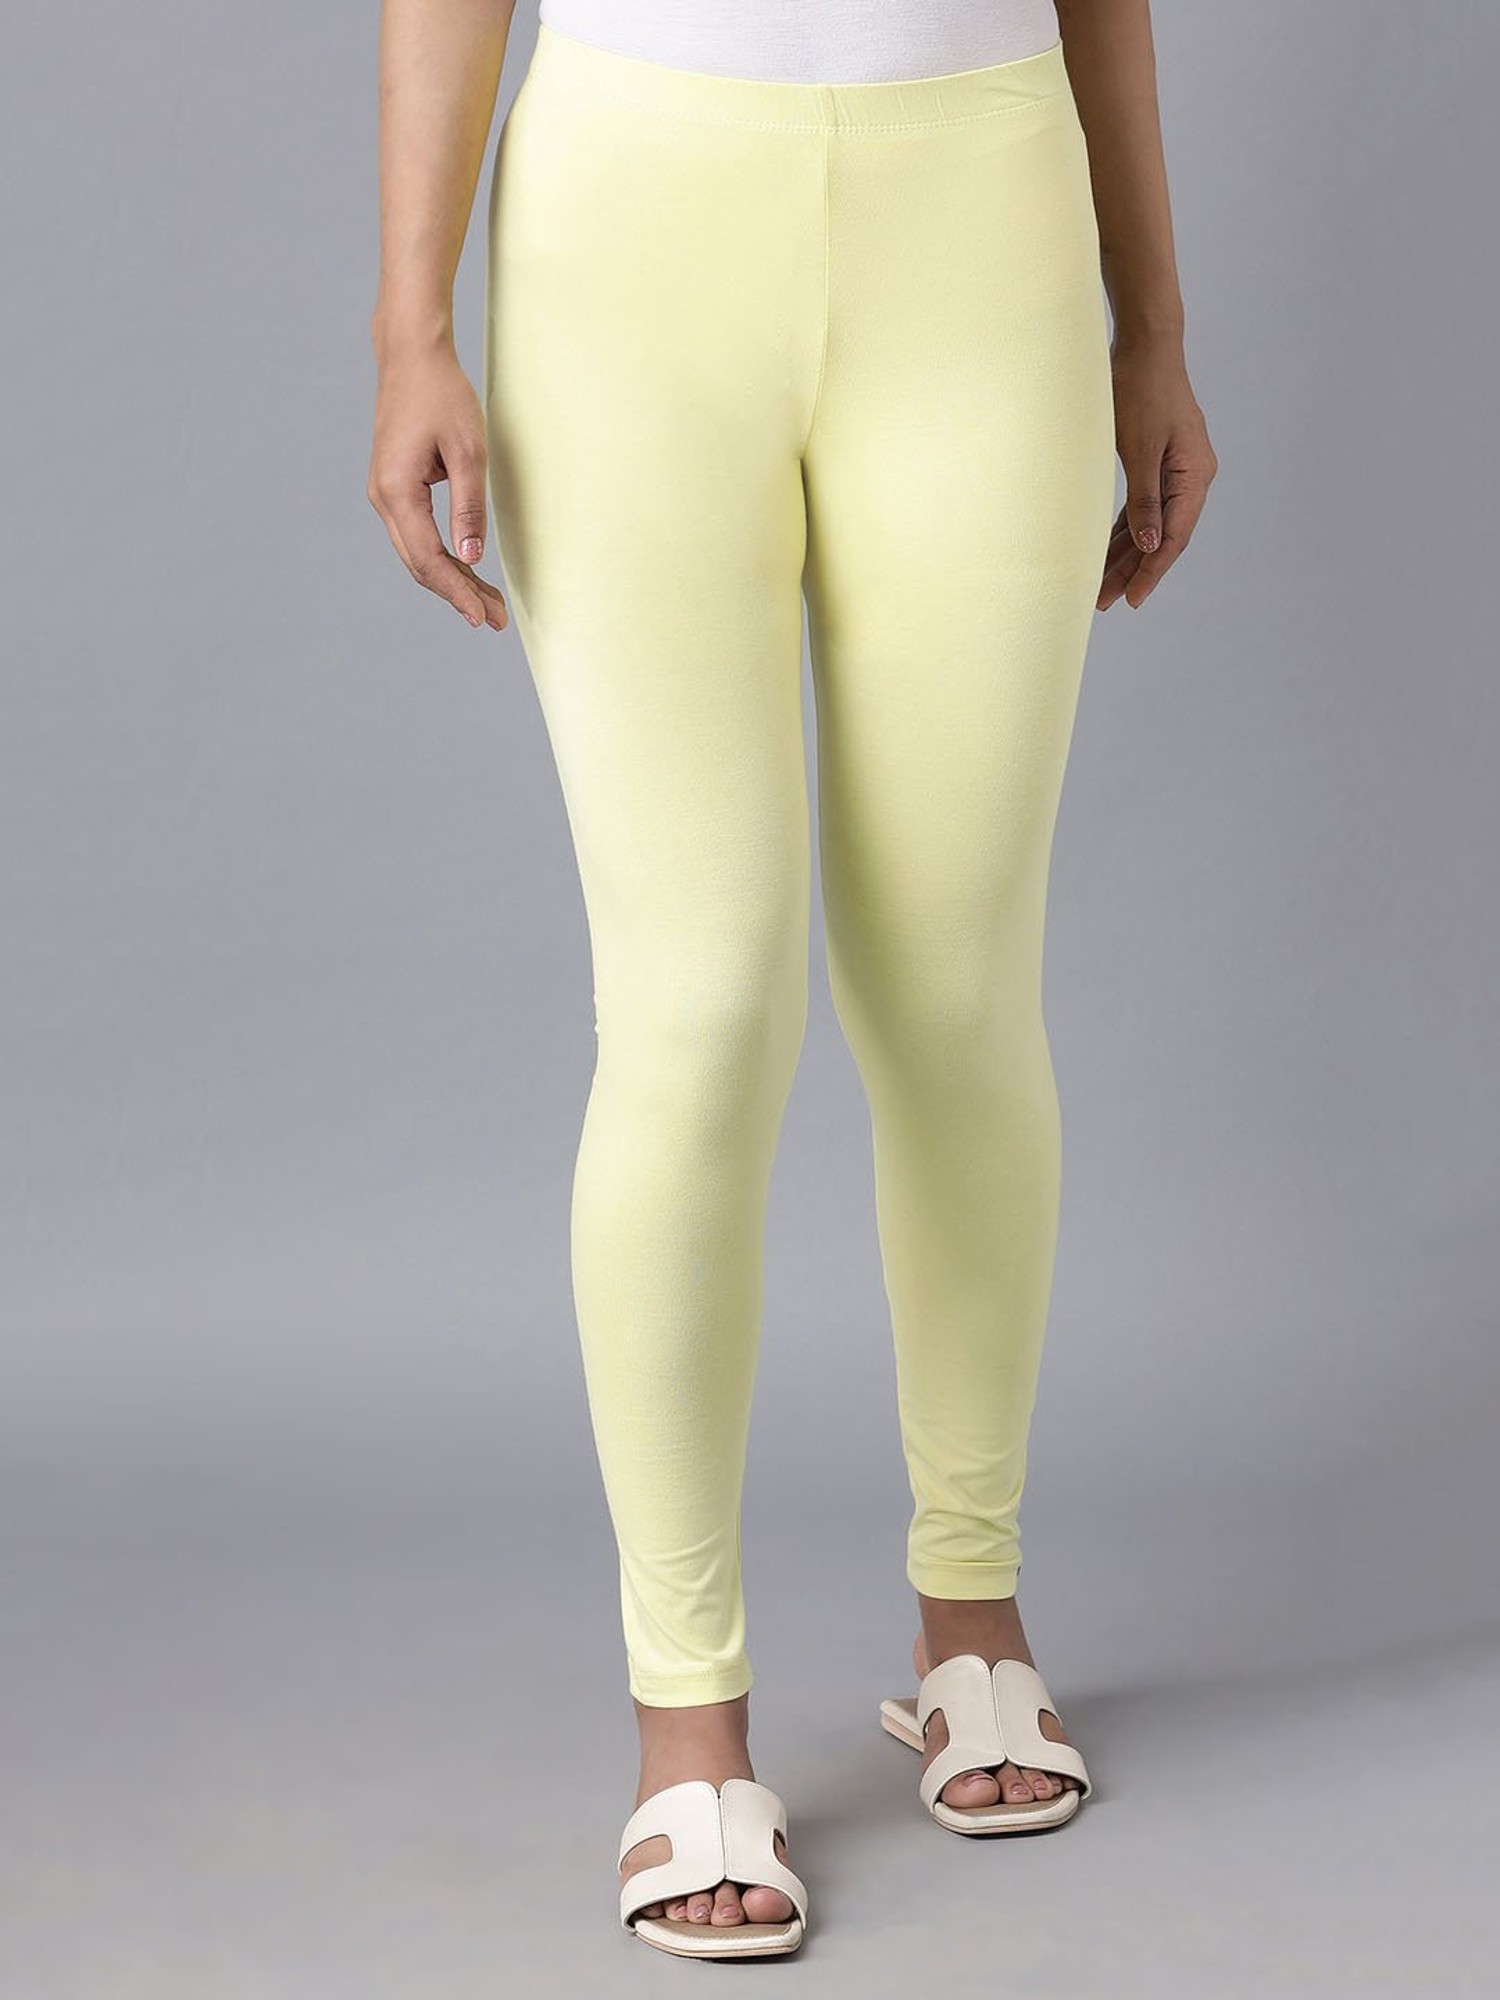 Buy Elleven Lime Yellow Leggings for Women's Online @ Tata CLiQ